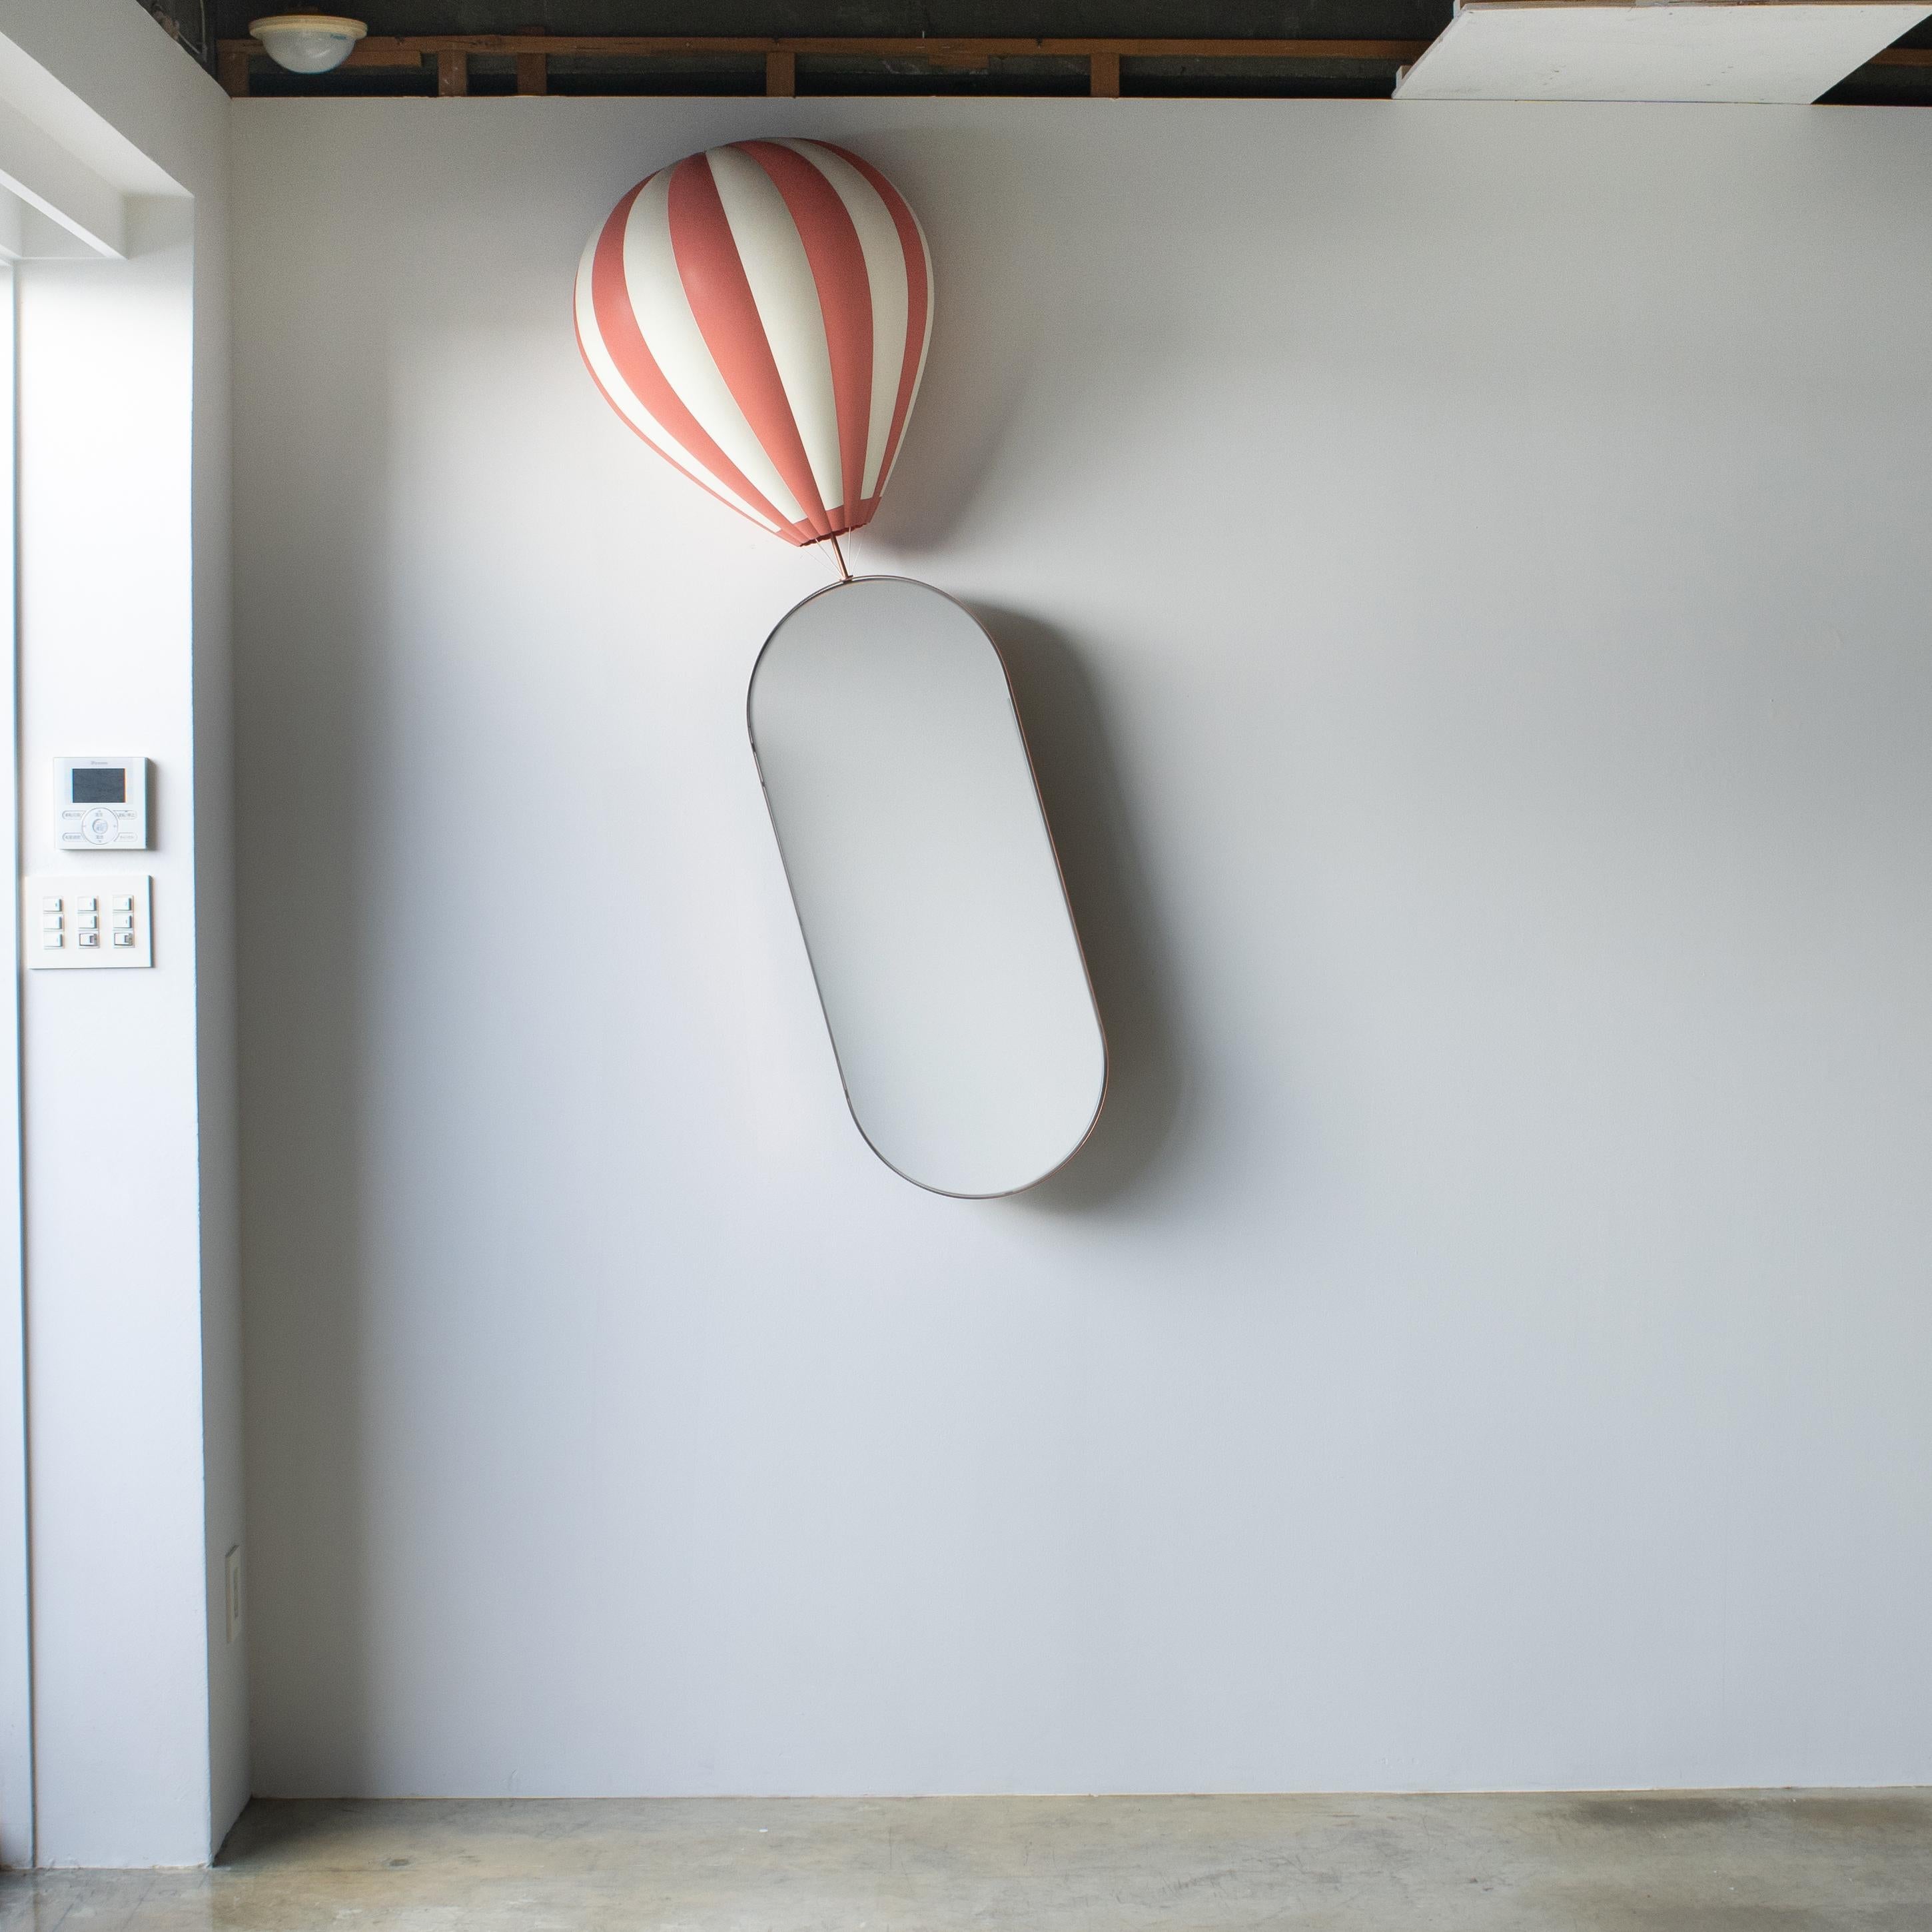 Ballon-Wandspiegel entworfen von h220430, Satoshi Itasaka. 
Der Ballon ist aus ABS-Kunststoff gefertigt. Der Spiegelsockel ist aus Stahl gefertigt. Auf dem Bild ist der Spiegel leicht gekippt. Es kann mit freiem Winkel wie vertikal installiert